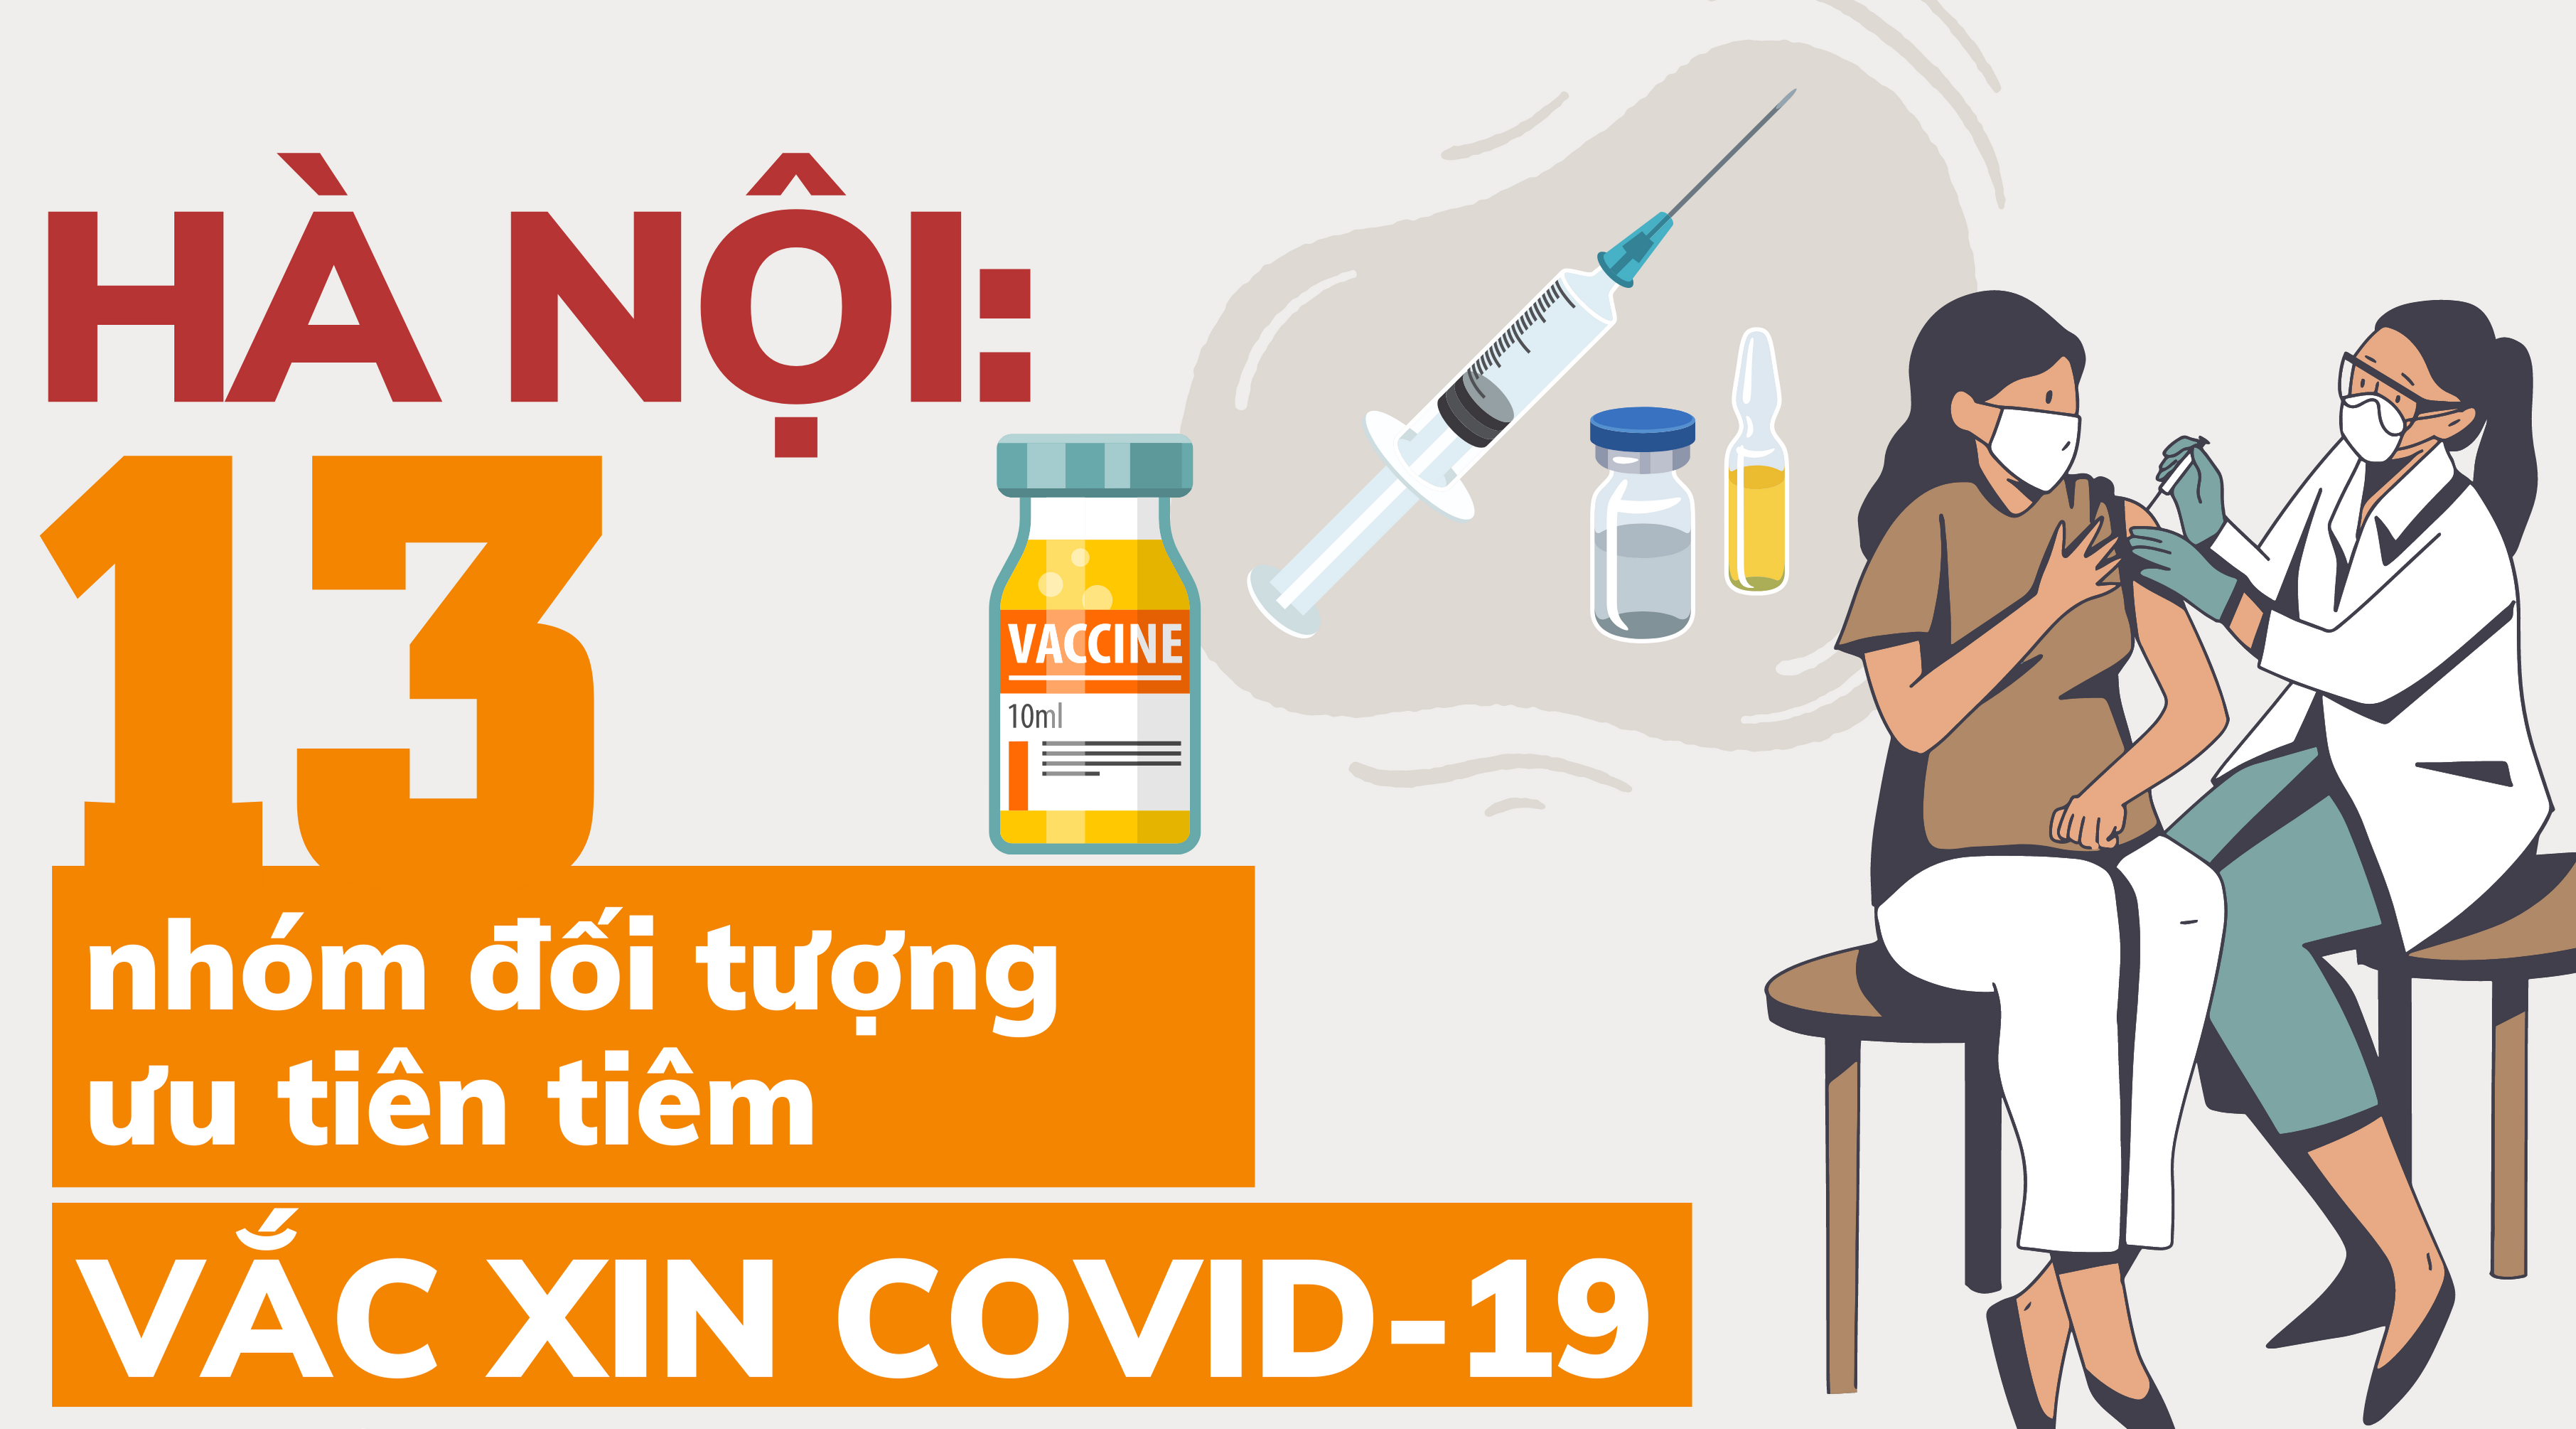 [Infographic] Hà Nội: 13 nhóm đối tượng được ưu tiên tiêm vắc xin Covid-19